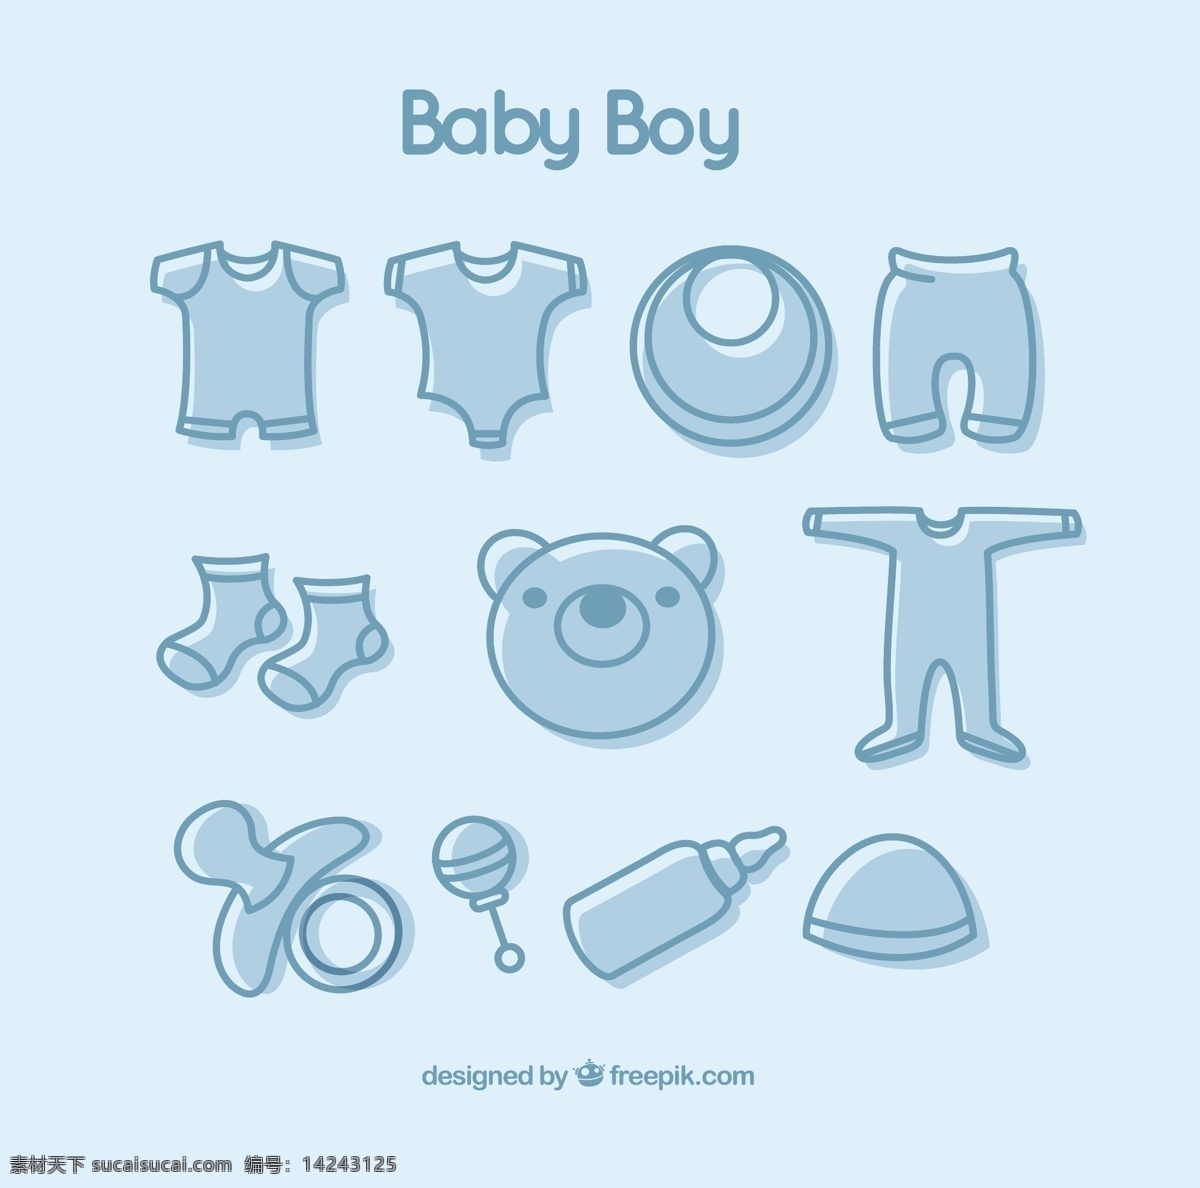 手卉婴儿服装 婴儿 绘制 衣服 男孩 绘画 服装 泰迪 手工 图画 抽纱 奶嘴 宝贝 瓶子 手绘 拉特尔